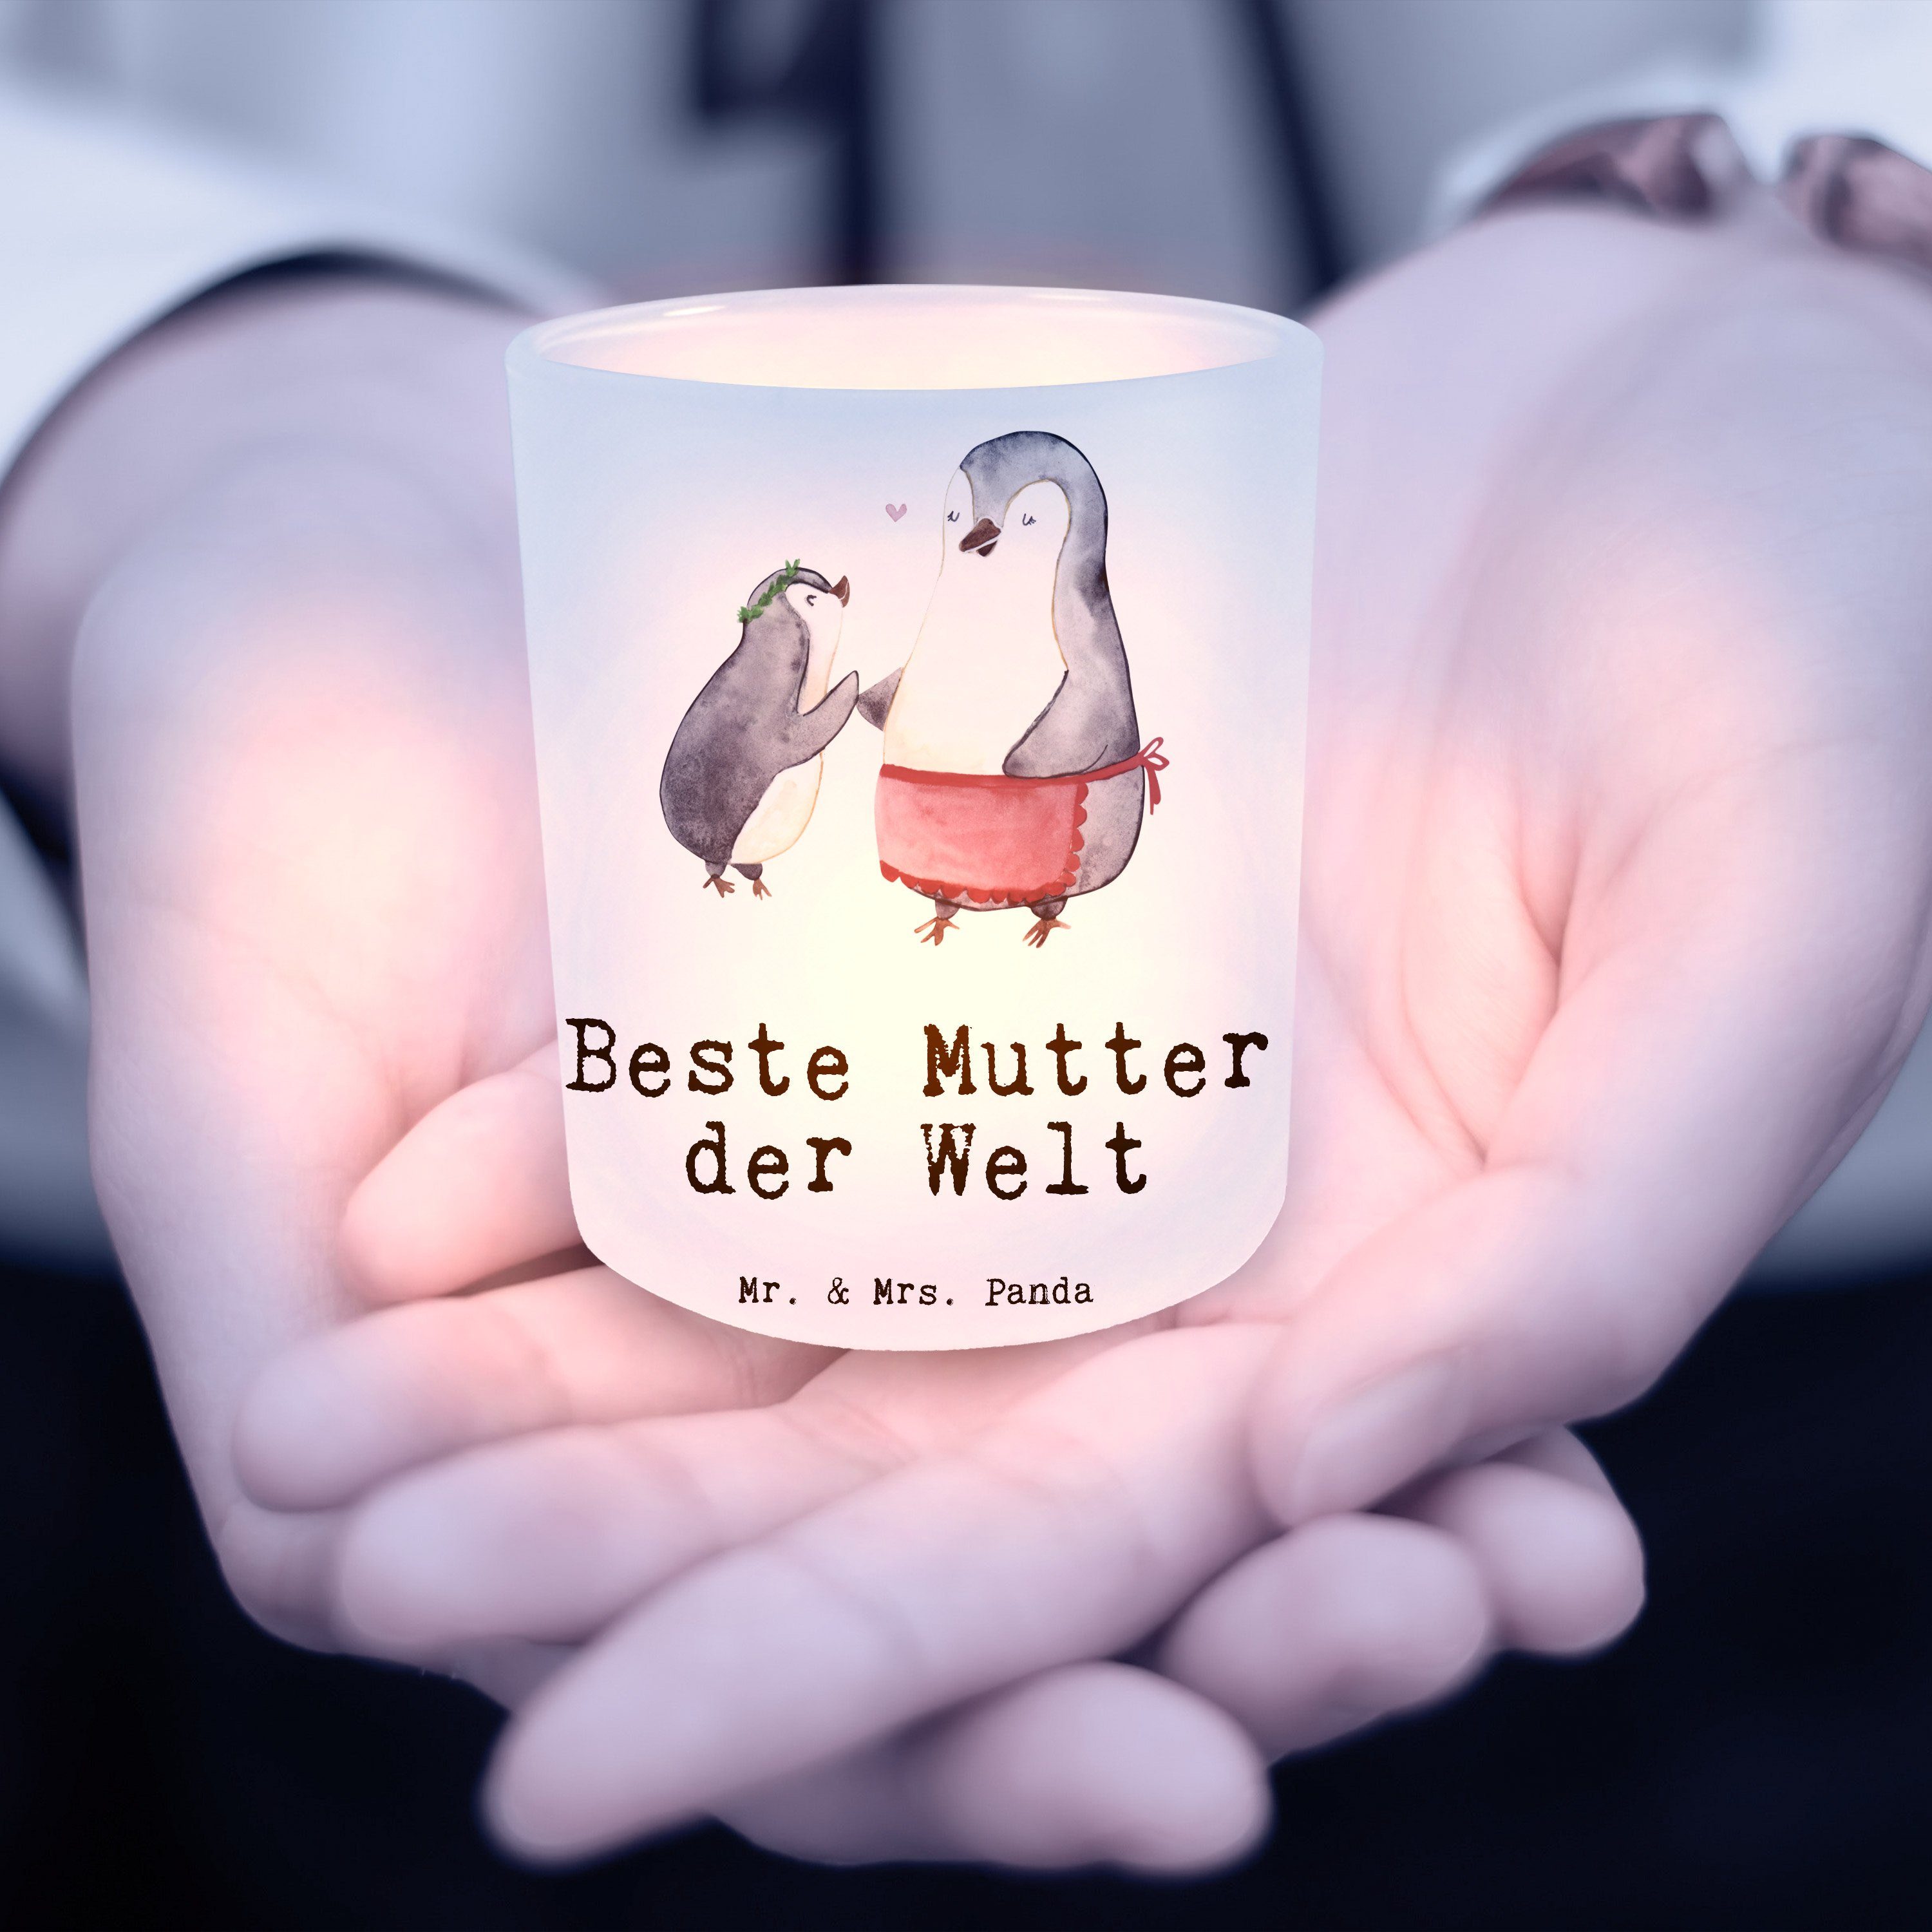 Mr. & Mrs. Panda K Mutter Beste Windlicht - St) Pinguin - Welt Transparent Geburtstag, der Geschenk, (1